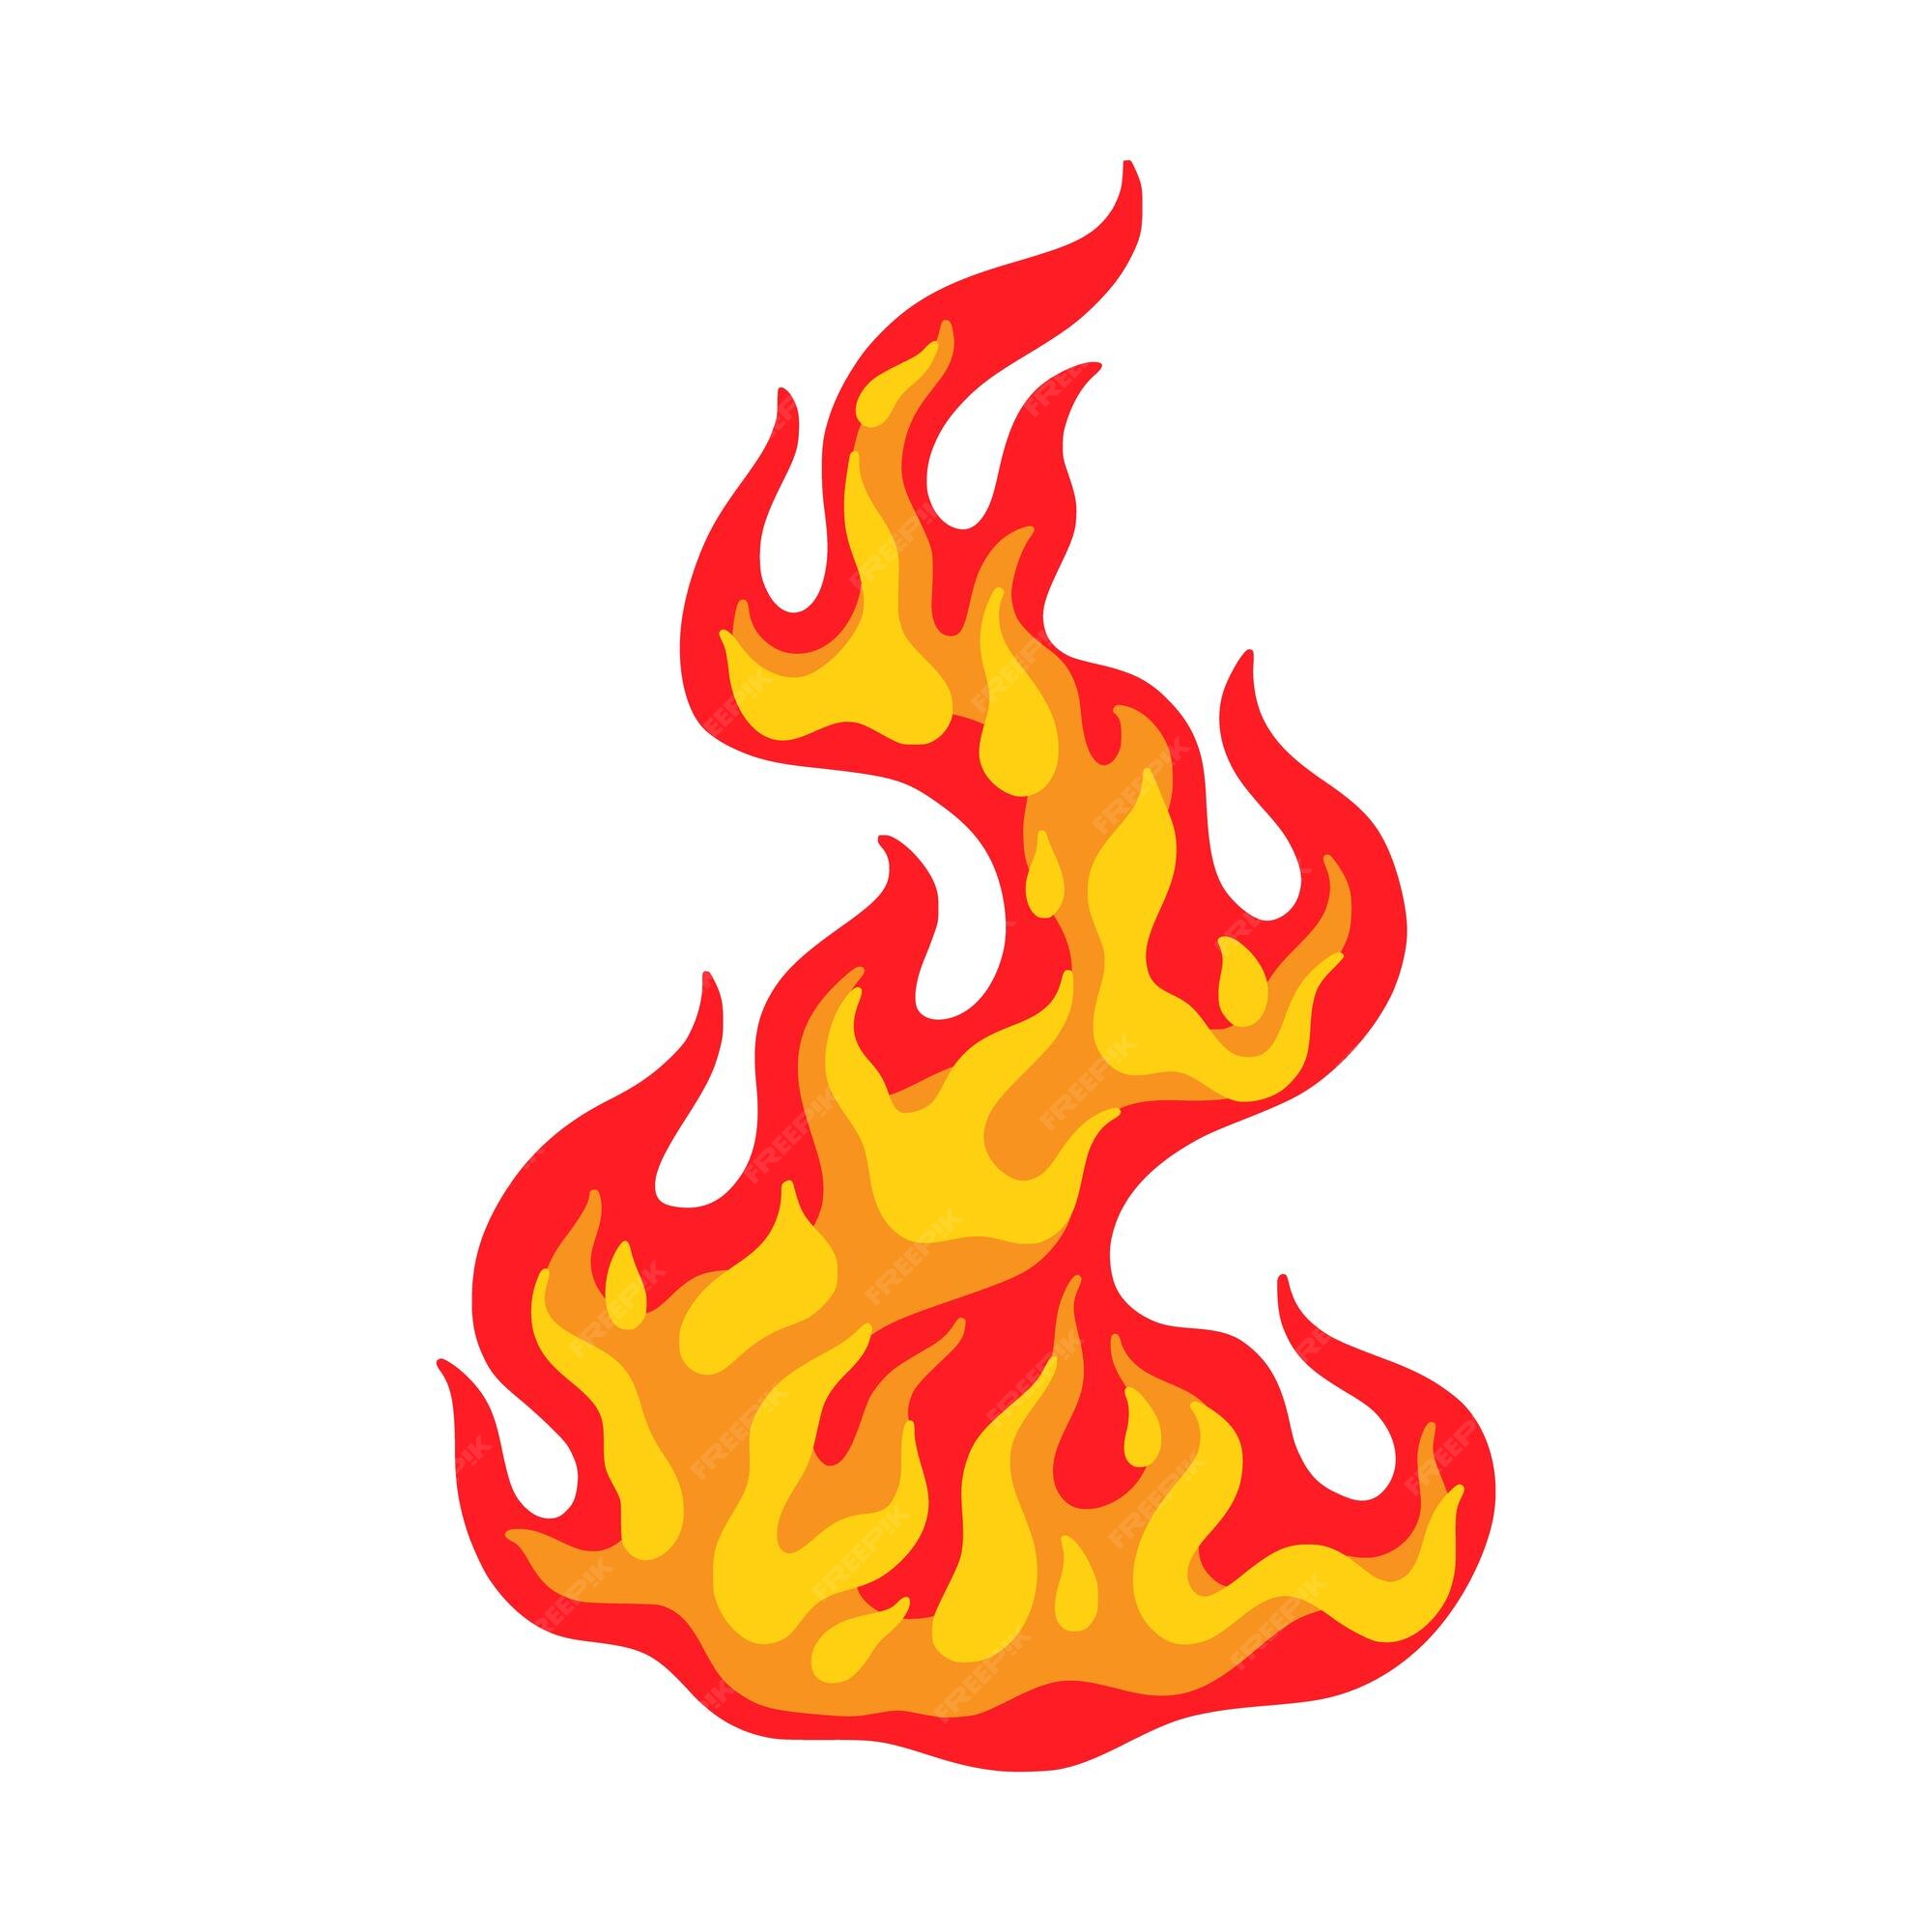 Incêndio Chama Perigo - Gráfico vetorial grátis no Pixabay - Pixabay